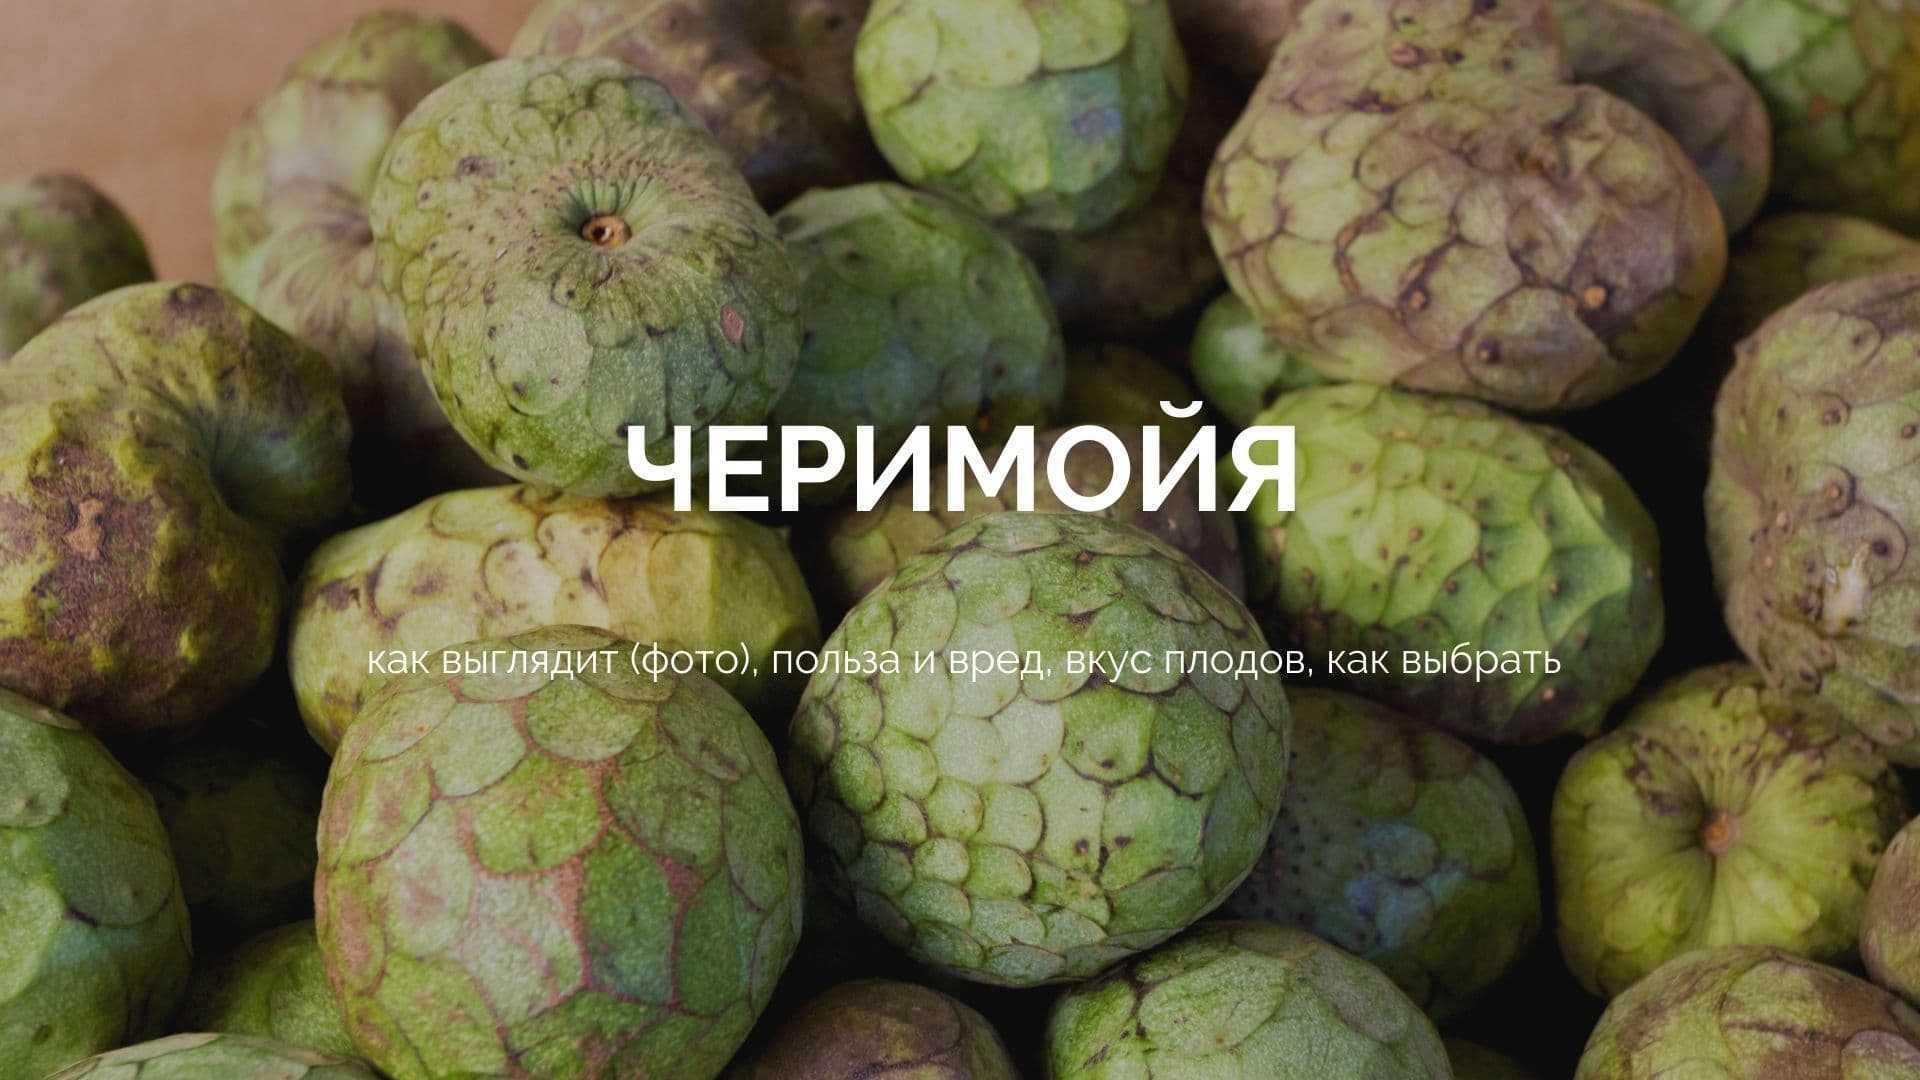 Бизнес на сухофруктах: как заработать в первый месяц 200 000 рублей?